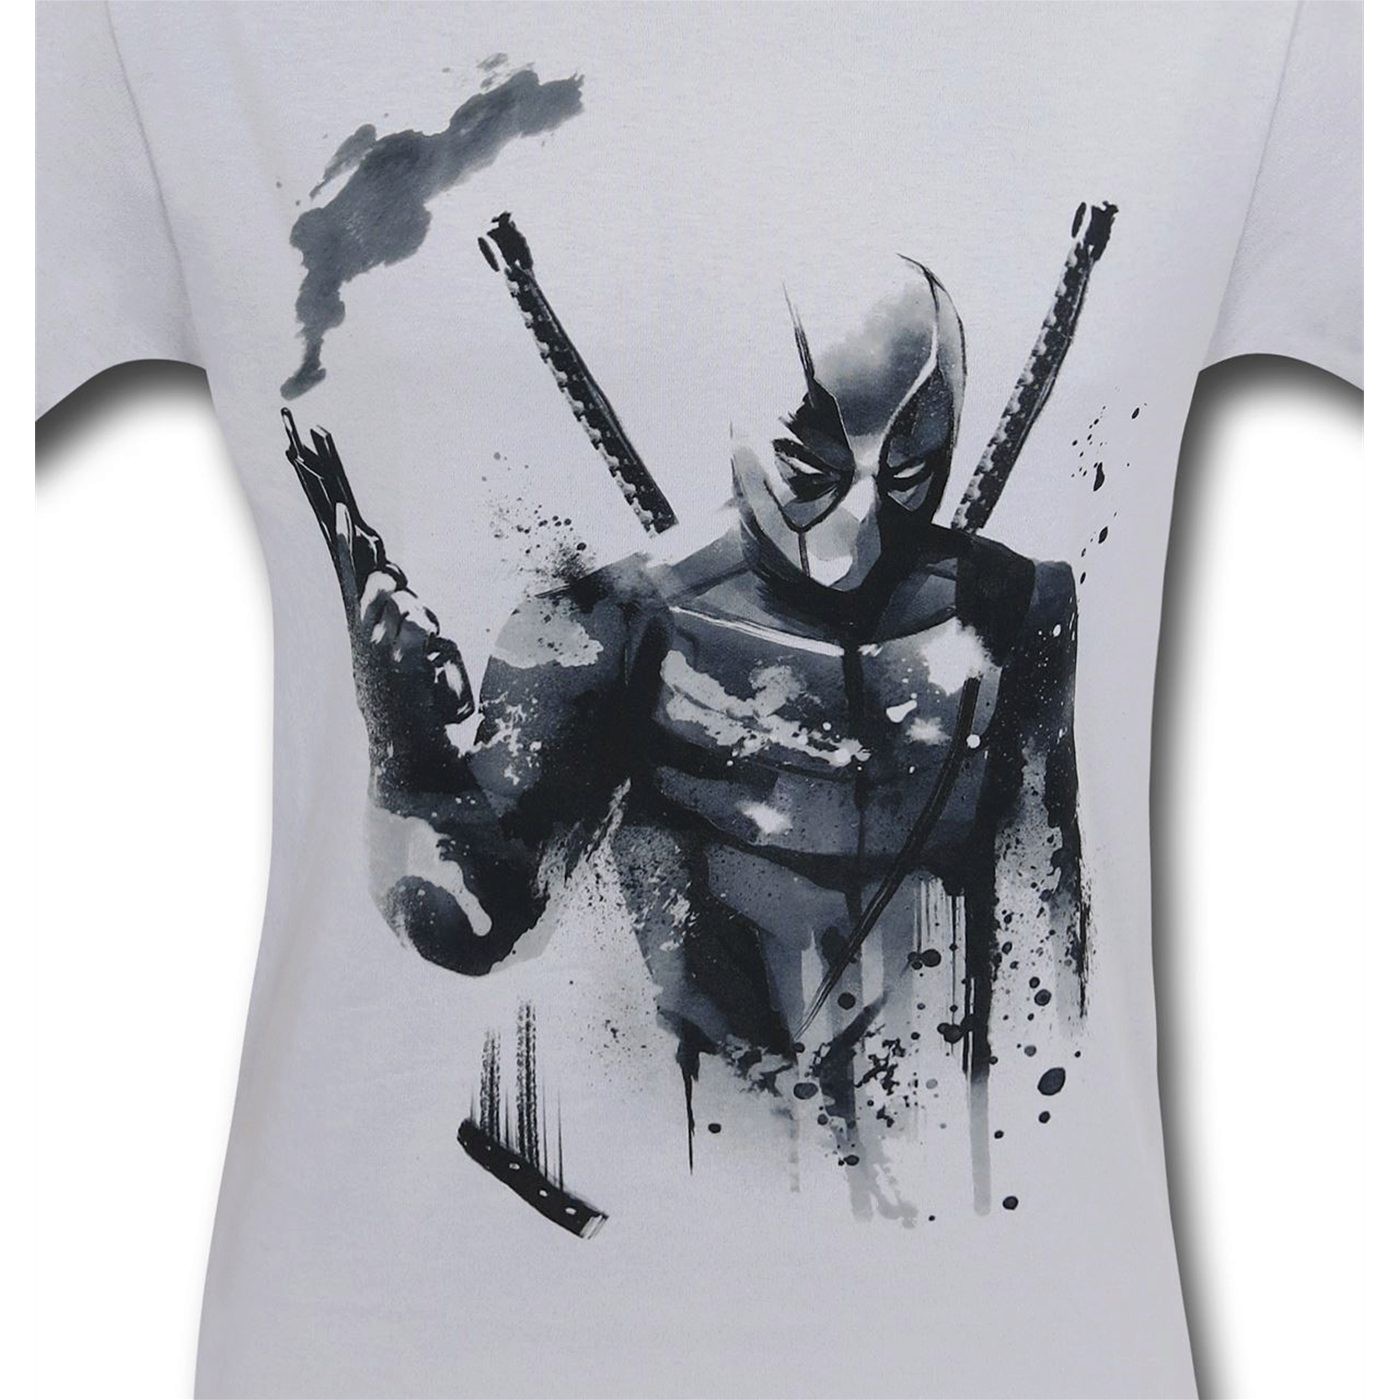 Deadpool Smoking Gun T-Shirt